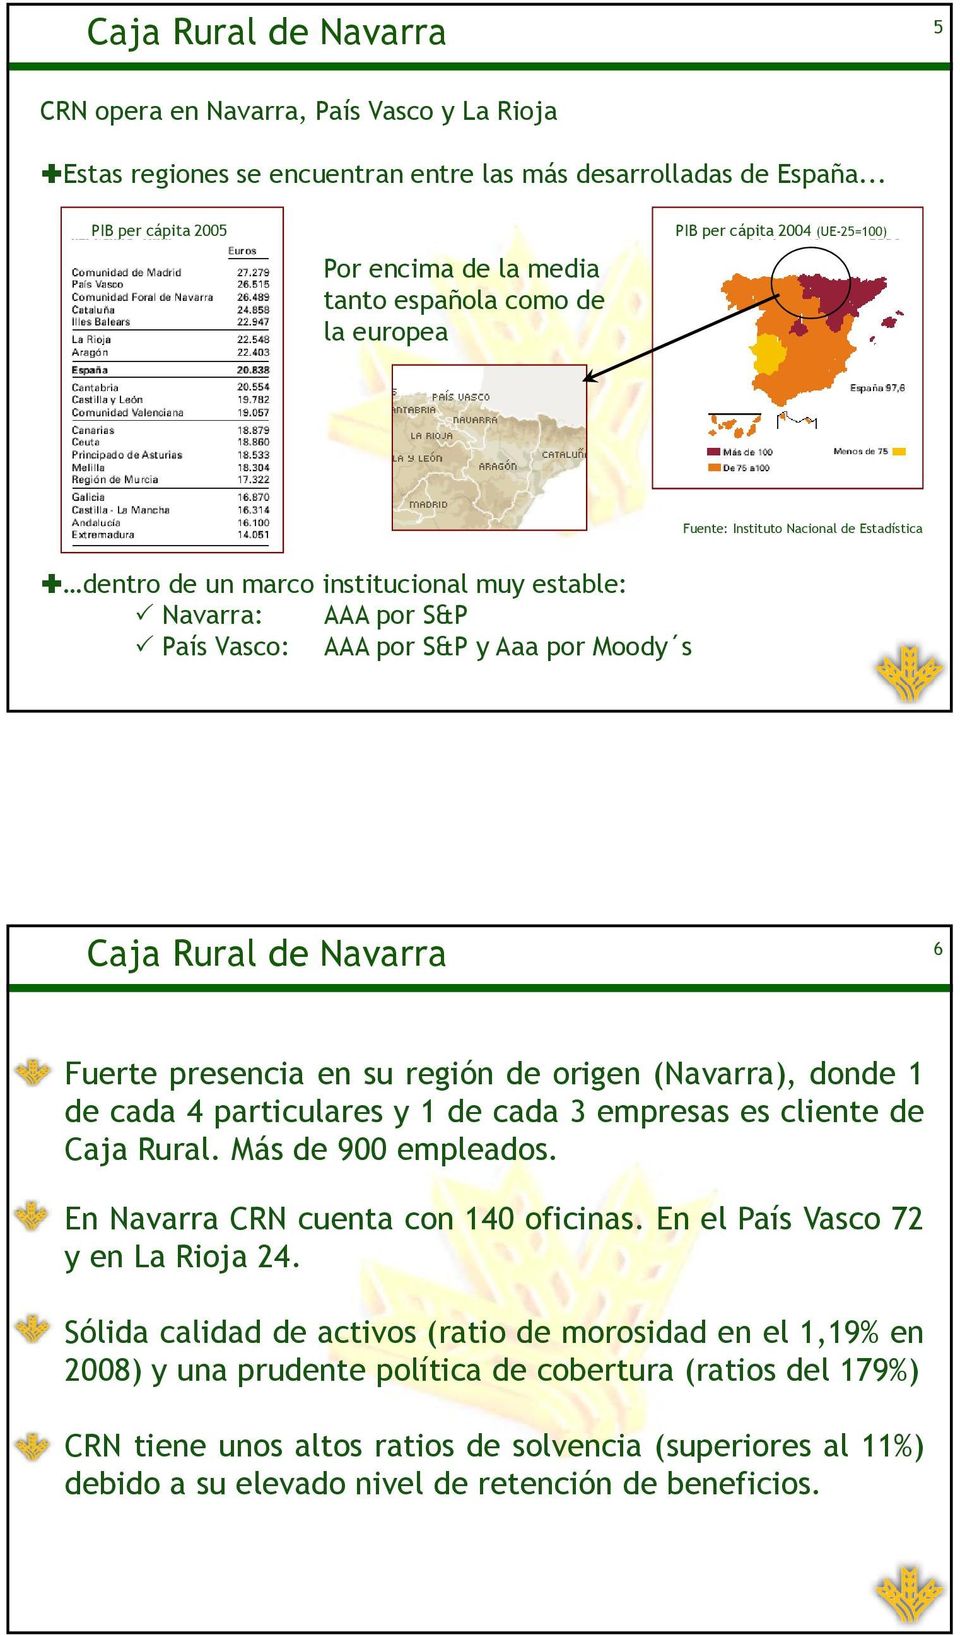 Navarra: AAA por S&P País Vasco: AAA por S&P y Aaa por Moody s Caja Rural de Navarra 6 Fuerte presencia en su región de origen (Navarra), donde 1 de cada 4 particulares y 1 de cada 3 empresas es